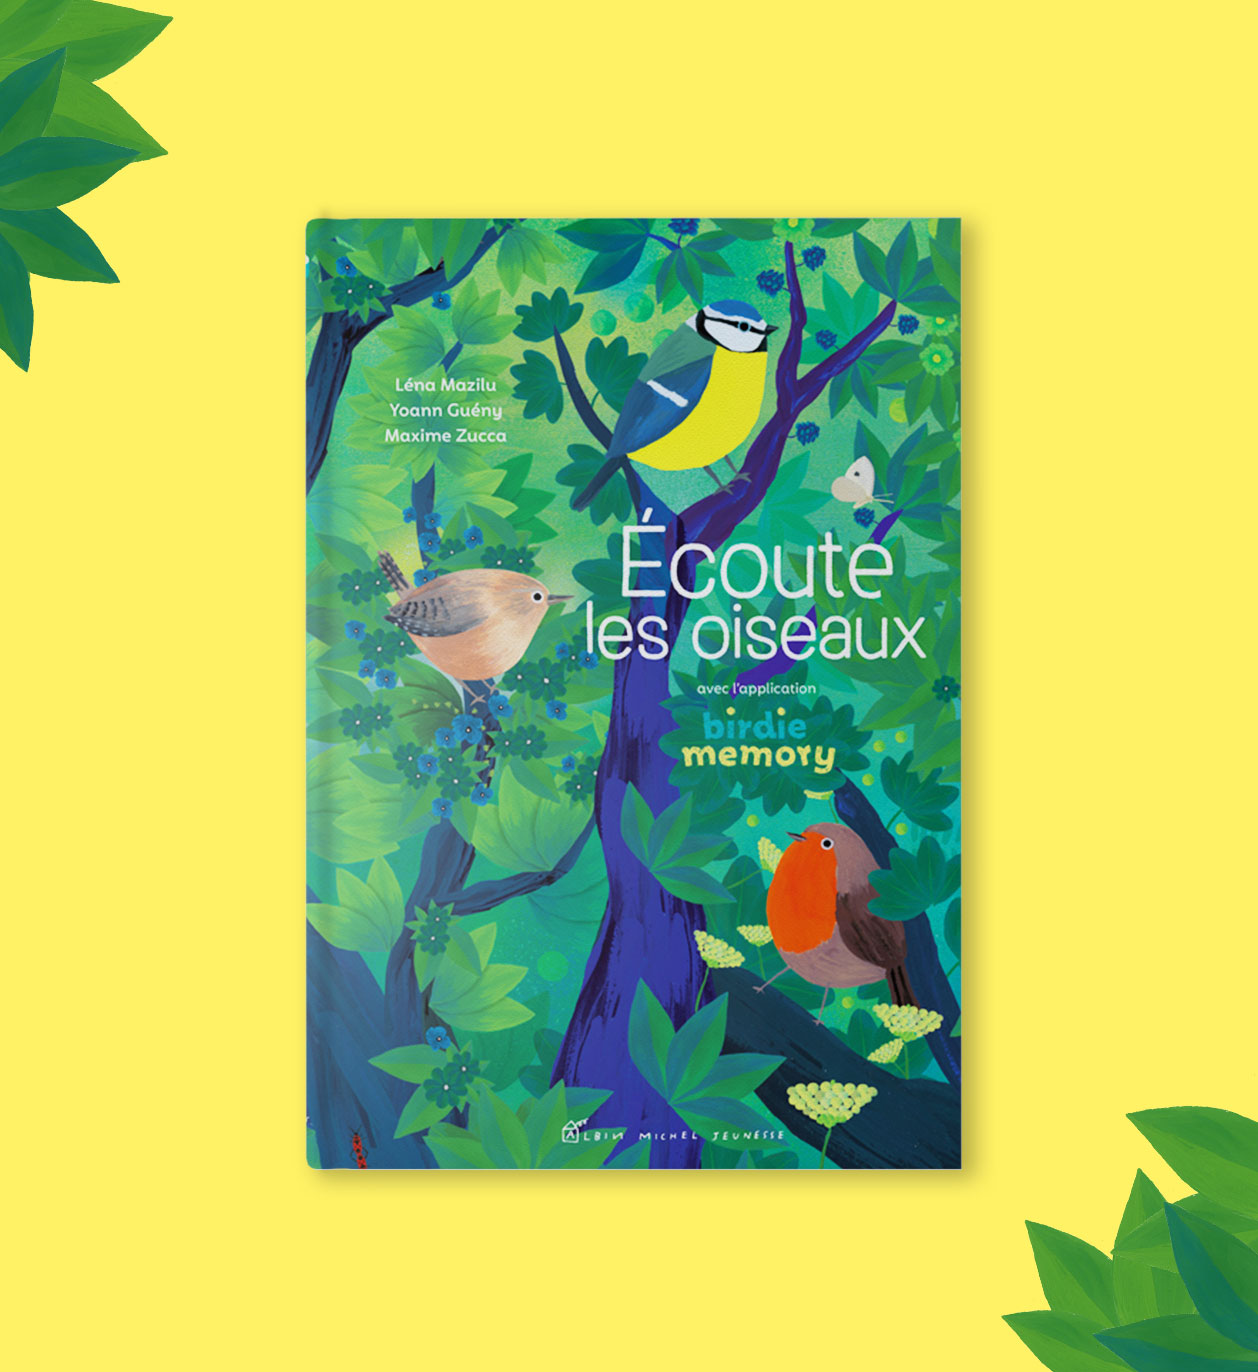 The book “Ecoute les oiseaux”